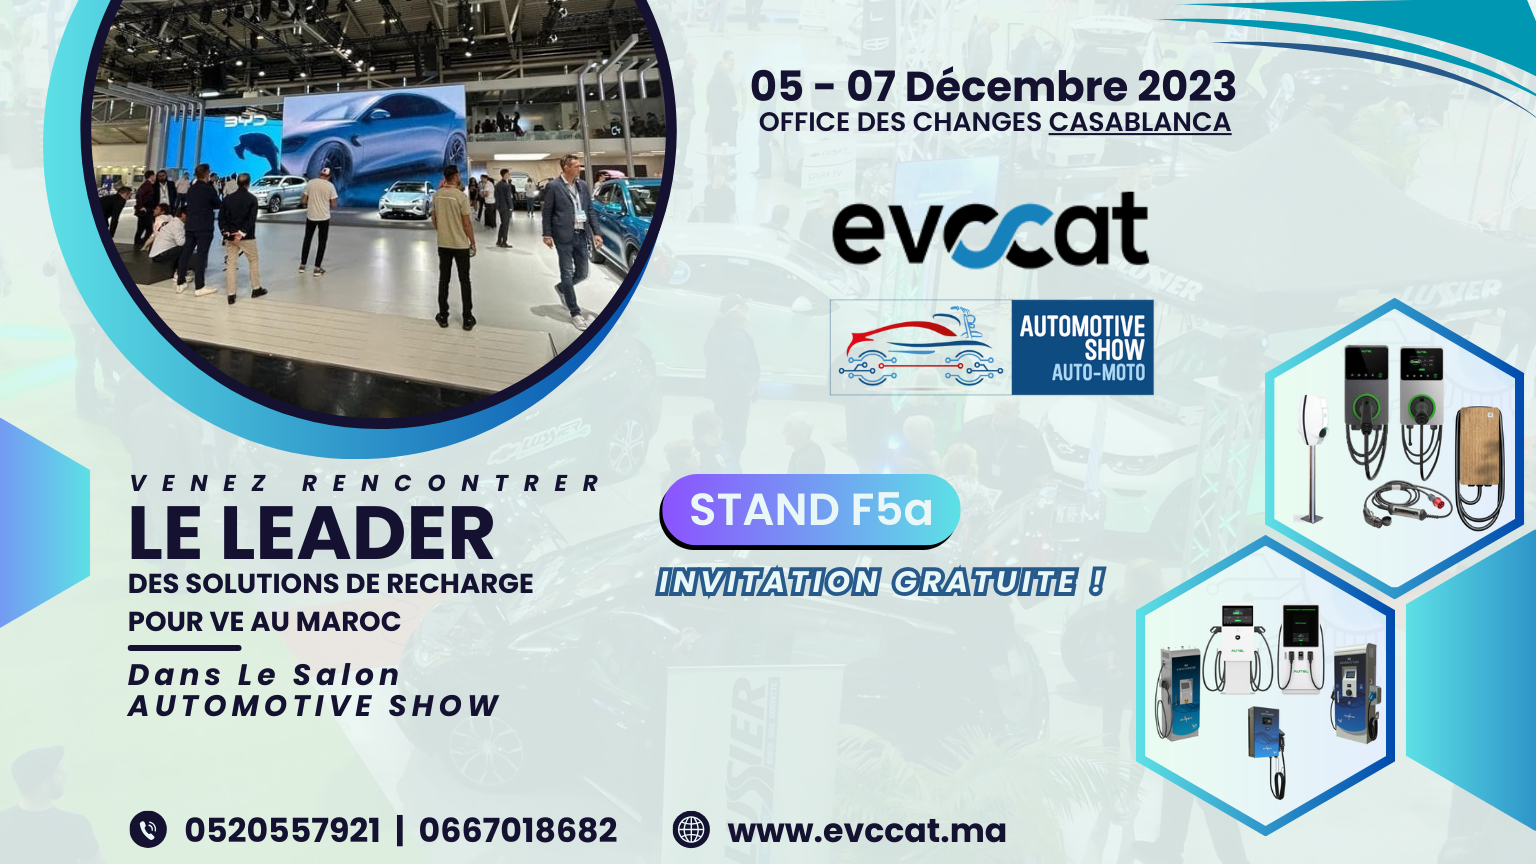 Evccat automotive show bornes de recharge formation